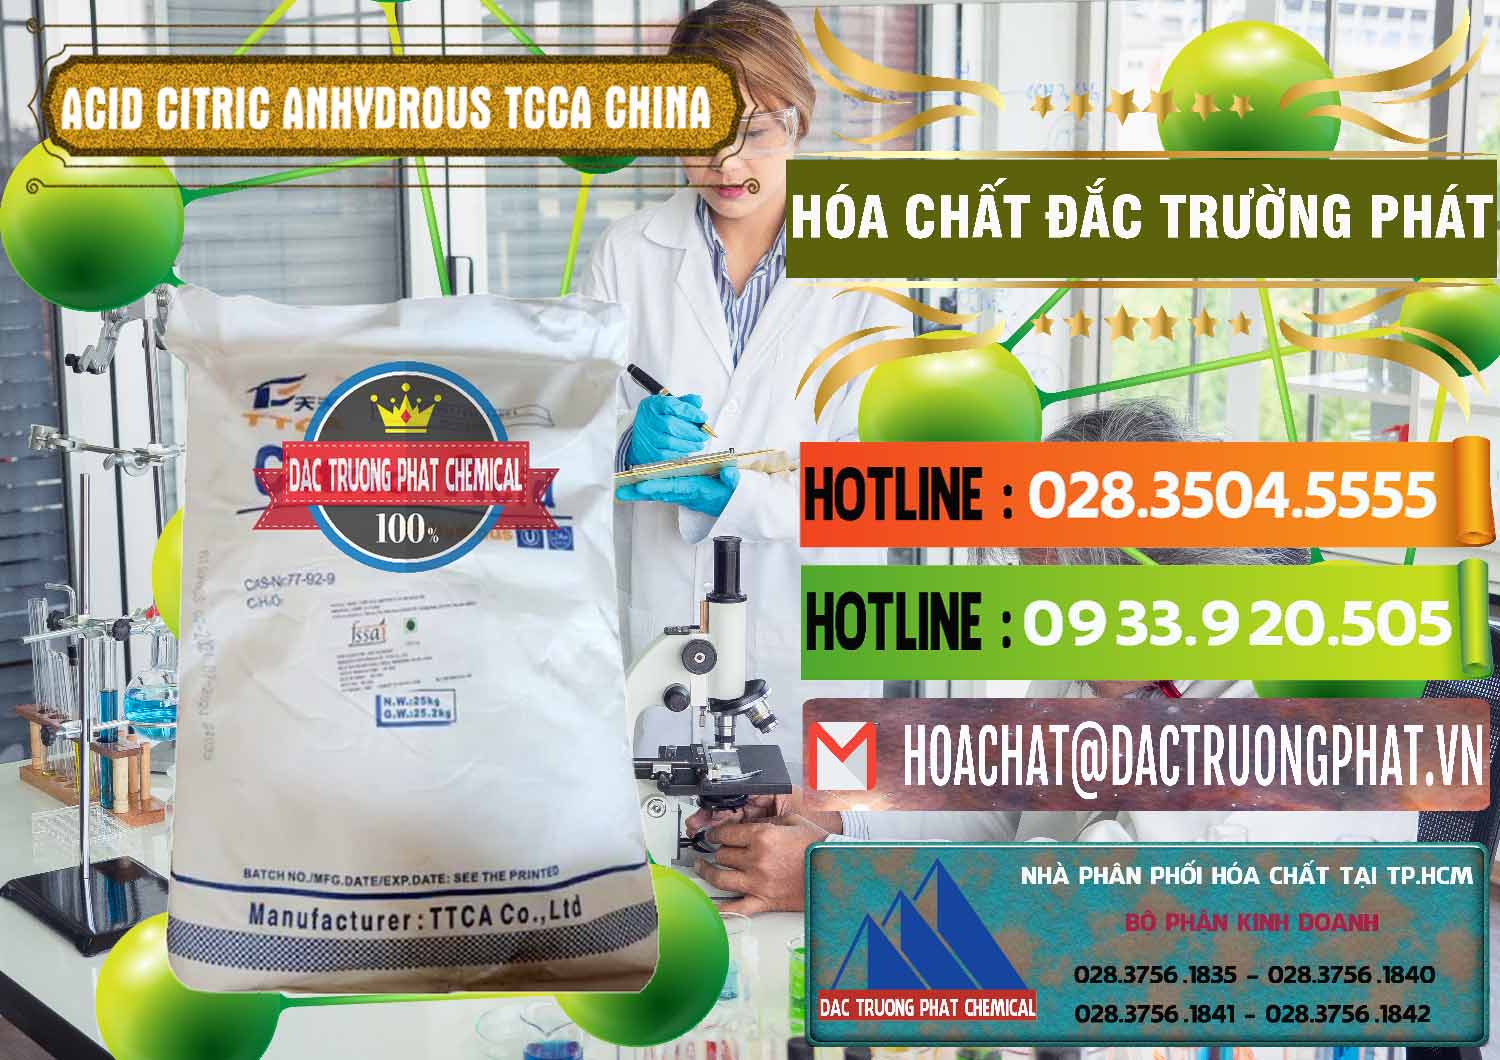 Đơn vị chuyên bán - cung cấp Acid Citric - Axit Citric Anhydrous TCCA Trung Quốc China - 0442 - Nơi cung cấp và phân phối hóa chất tại TP.HCM - cungcaphoachat.com.vn